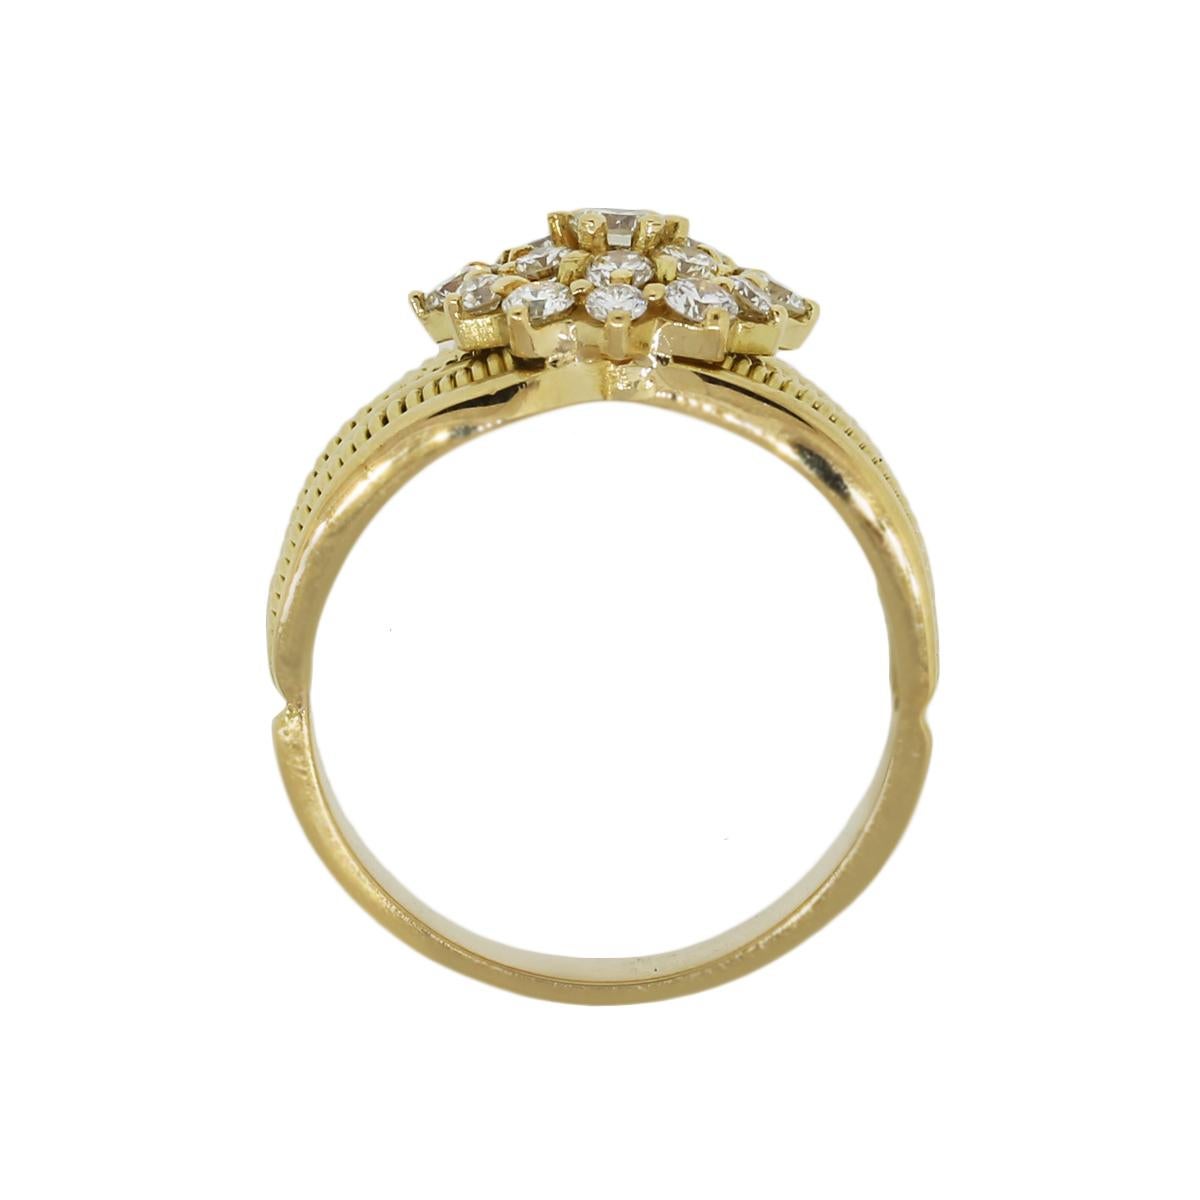 MATERIAL: 18k Gelbgold
Diamant-Details: Ungefähr 0,70ctw runde Brillanten. Die Diamanten haben eine Farbe von G/H und eine Reinheit von VS.
Ringgröße: 8.25
Ring-Maße: 1″ x 0,48″ x 0,84″
Gesamtgewicht: 10.8g (6.9dwt)
Zusätzliche Details: Dieser